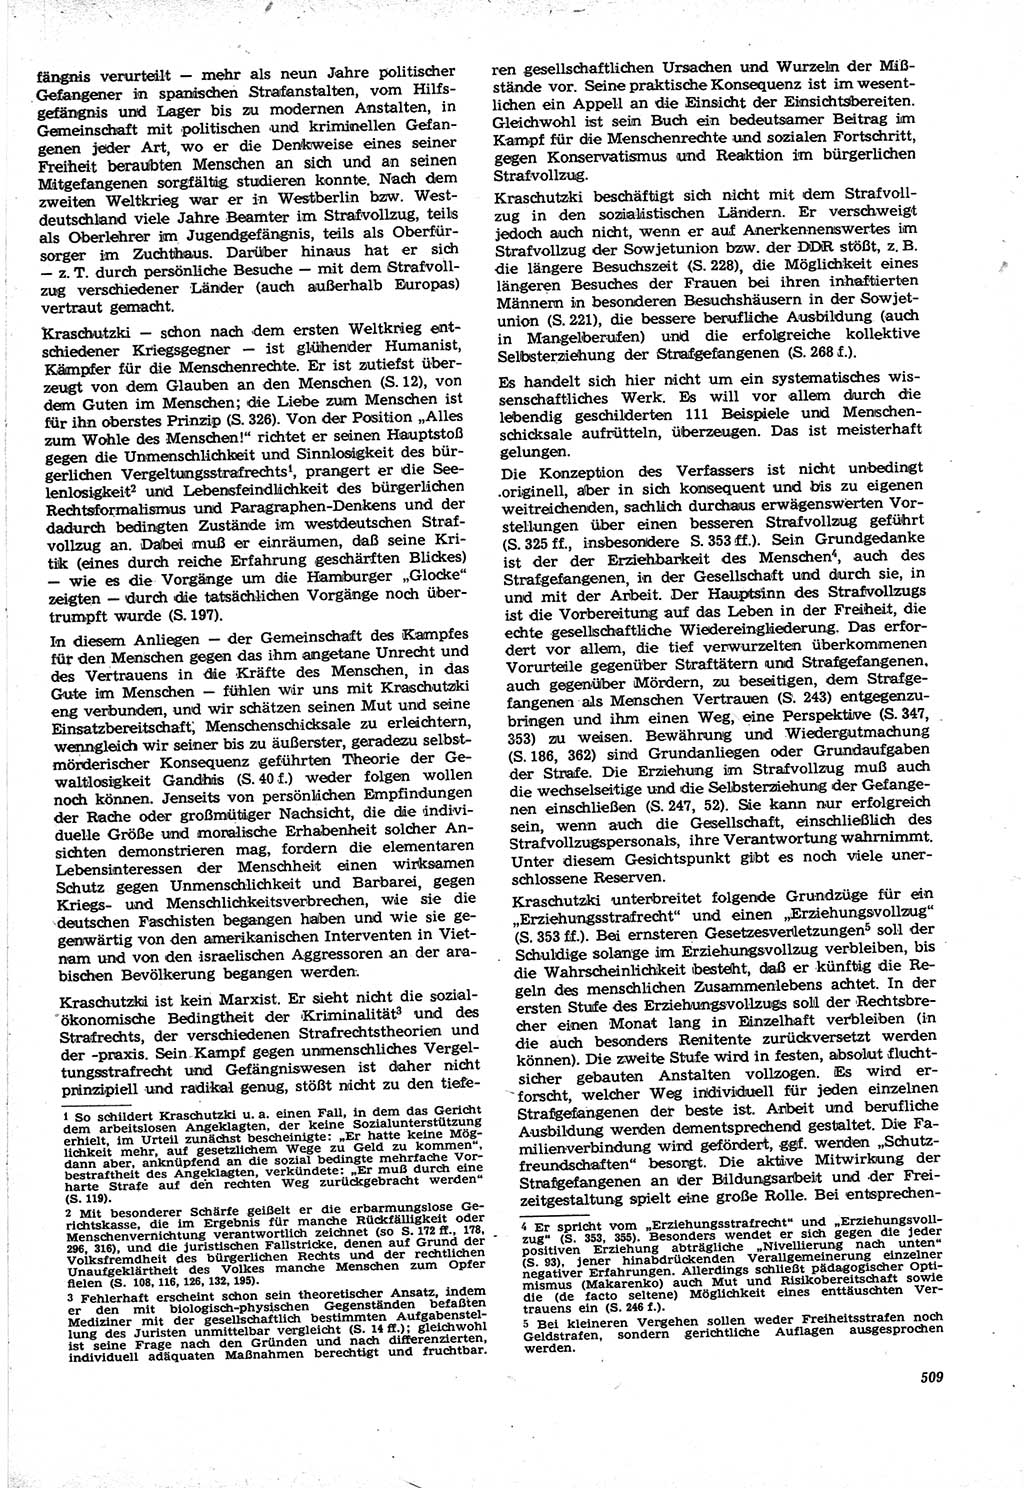 Neue Justiz (NJ), Zeitschrift für Recht und Rechtswissenschaft [Deutsche Demokratische Republik (DDR)], 21. Jahrgang 1967, Seite 509 (NJ DDR 1967, S. 509)